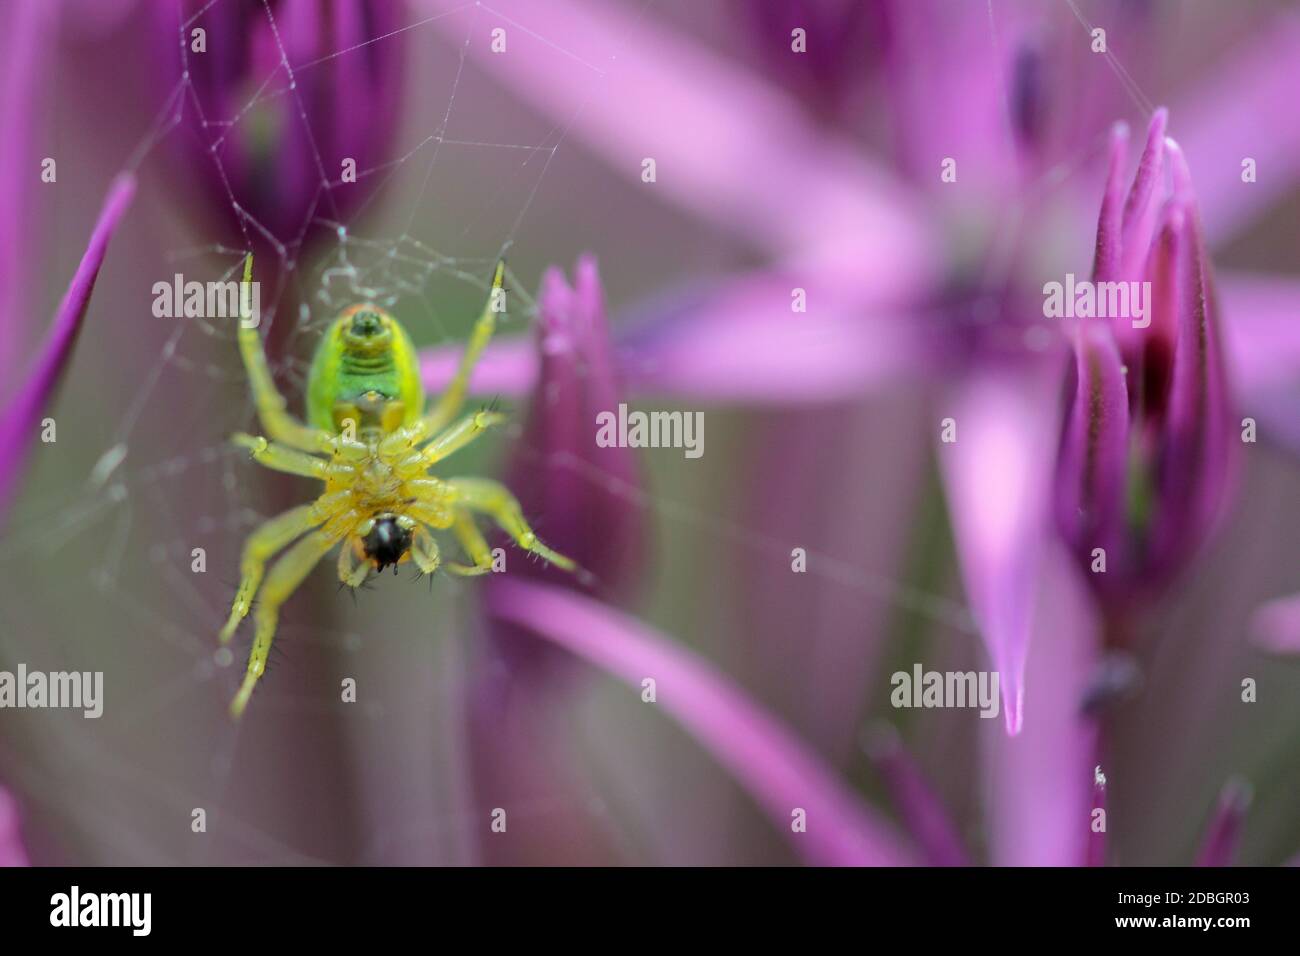 spider into garden ball leek Stock Photo